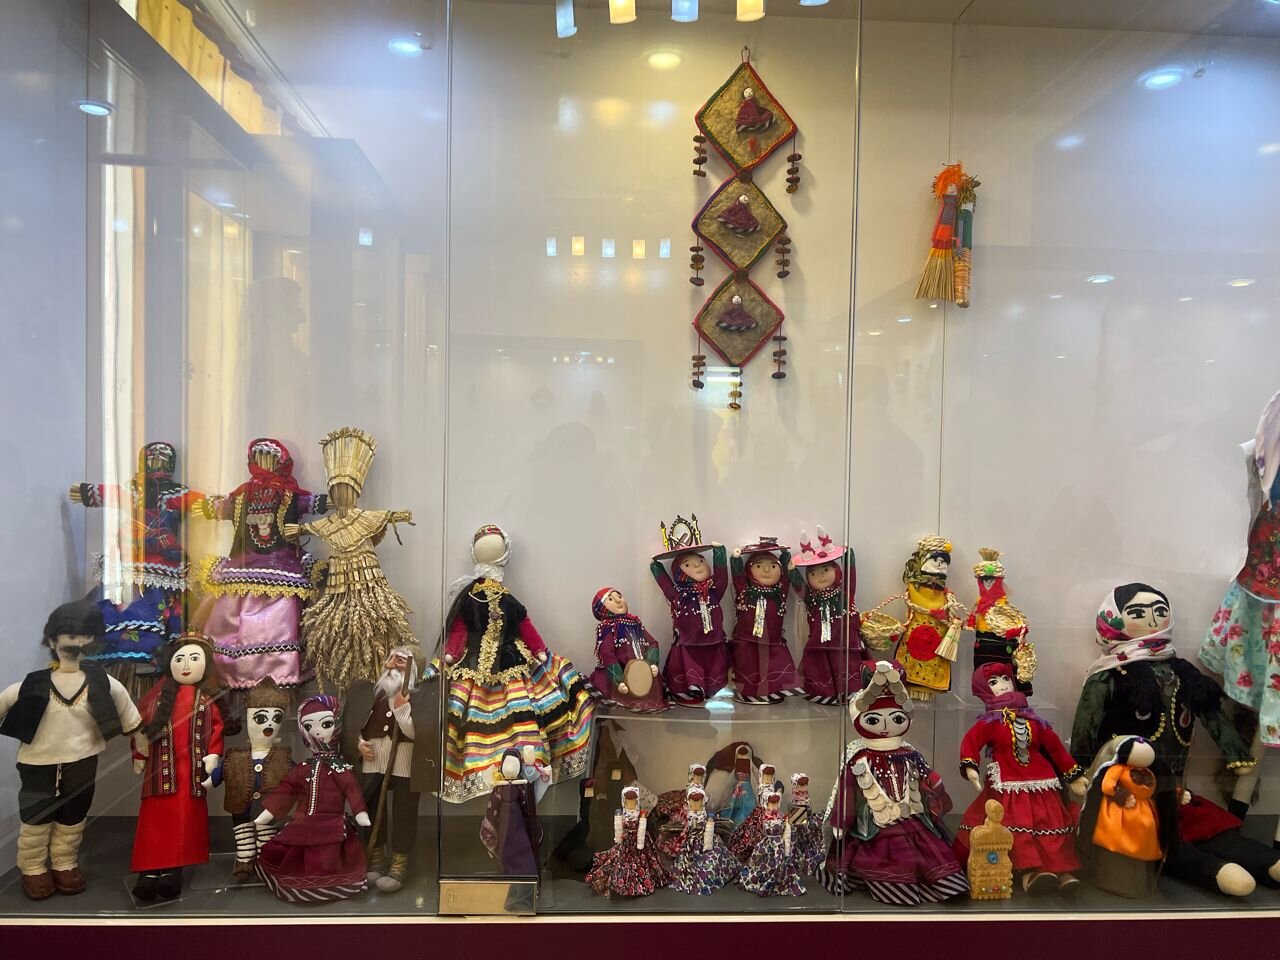 اینجا شهر جادویی عروسک هاست | سفر به دور دنیا با عروسک